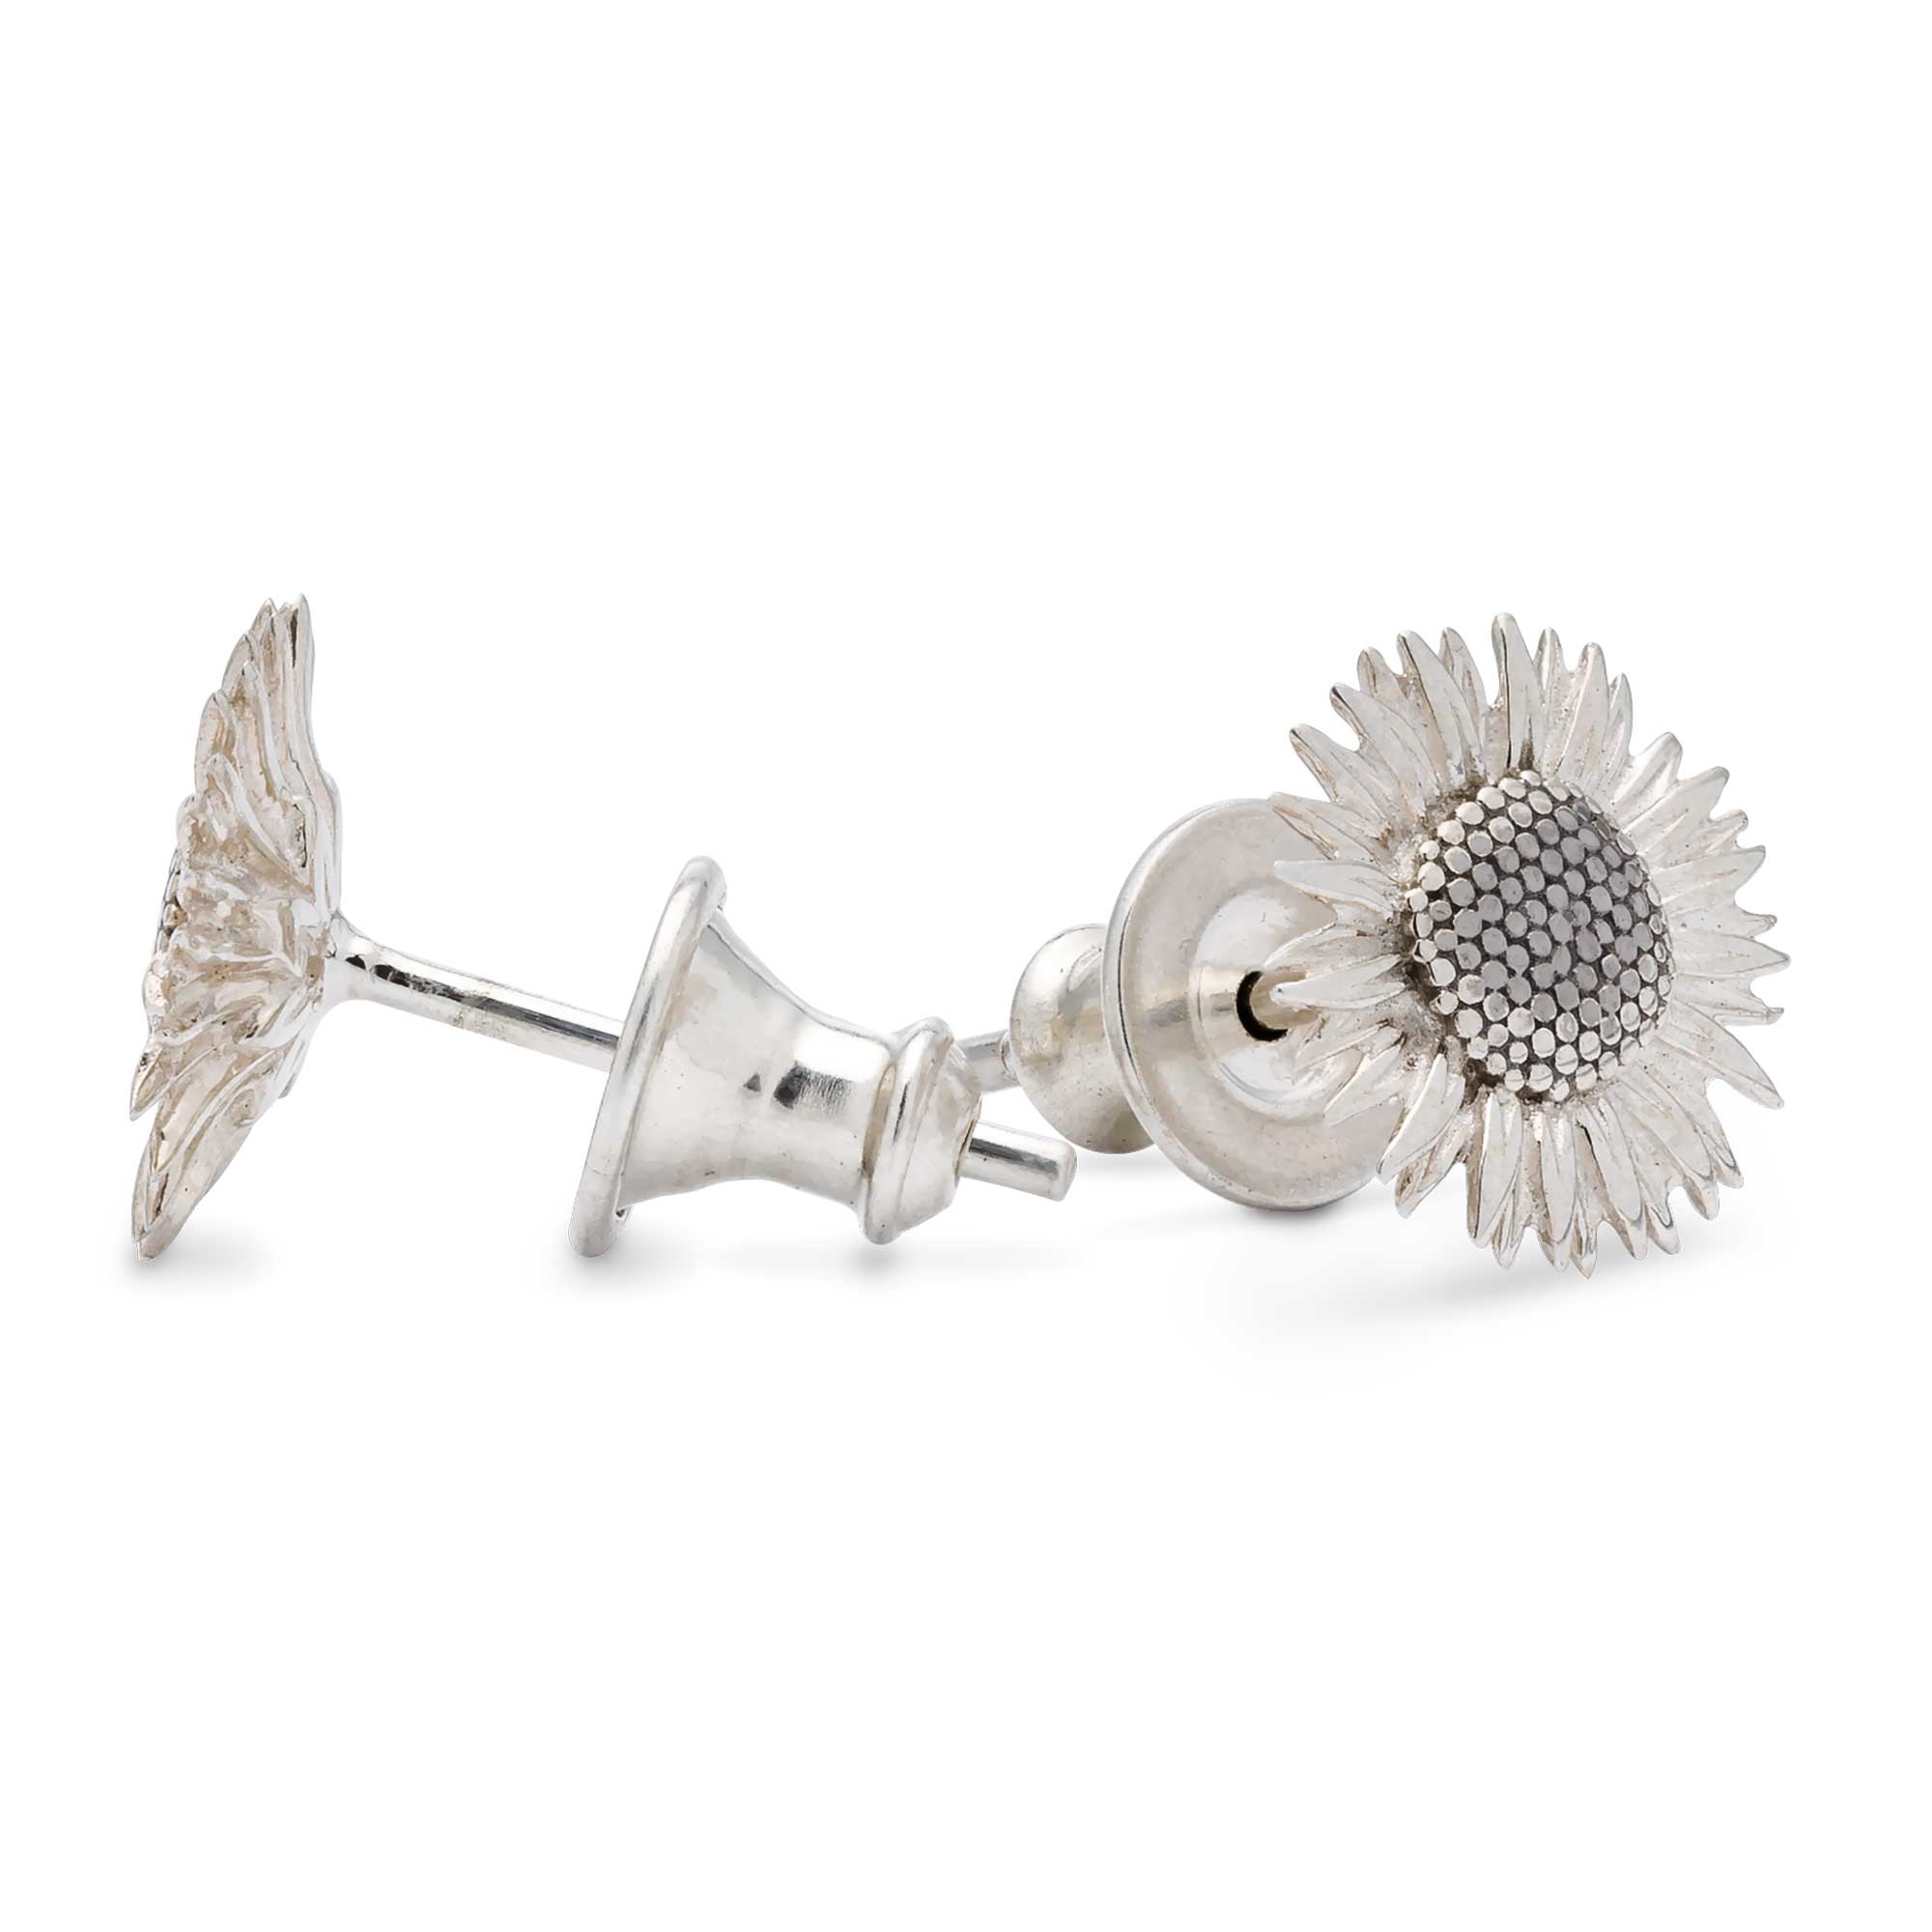 solid sterling silver sunflower stud earrings as seen at RhS Chelsea Flower Show Scarlett Jewellery